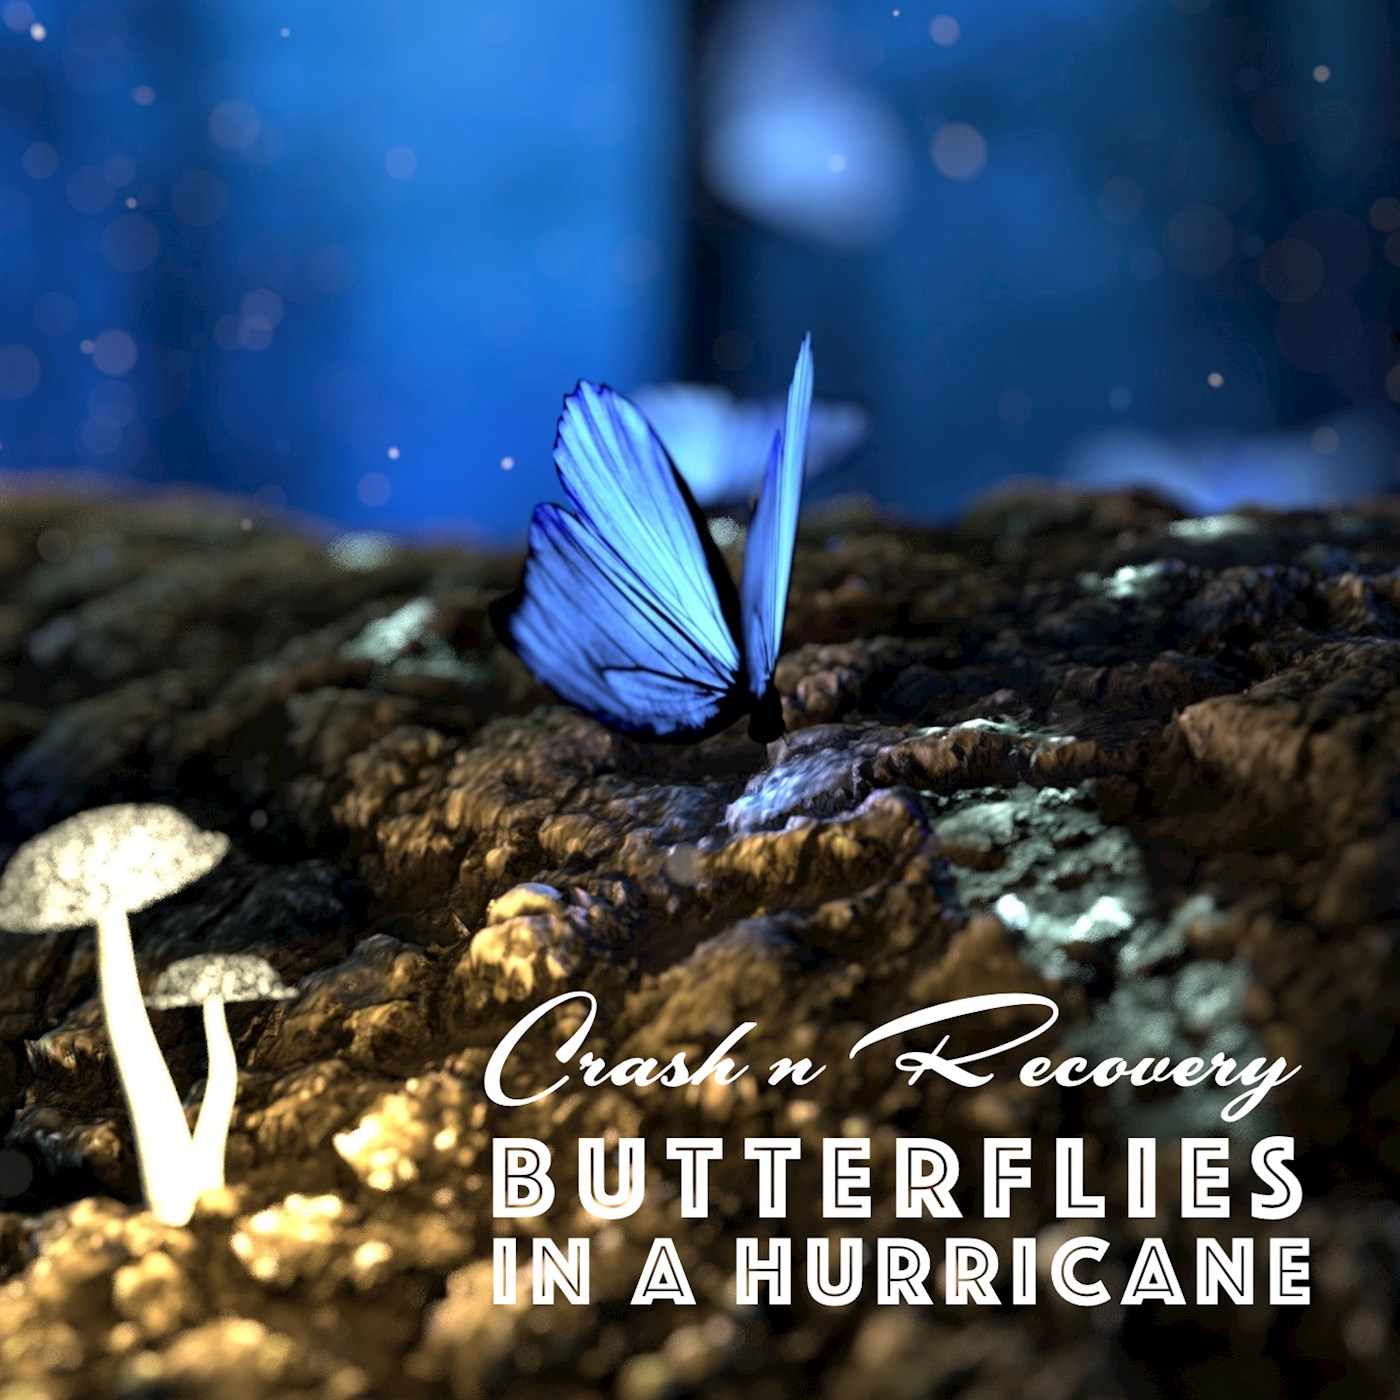 Butterflies in a hurricane